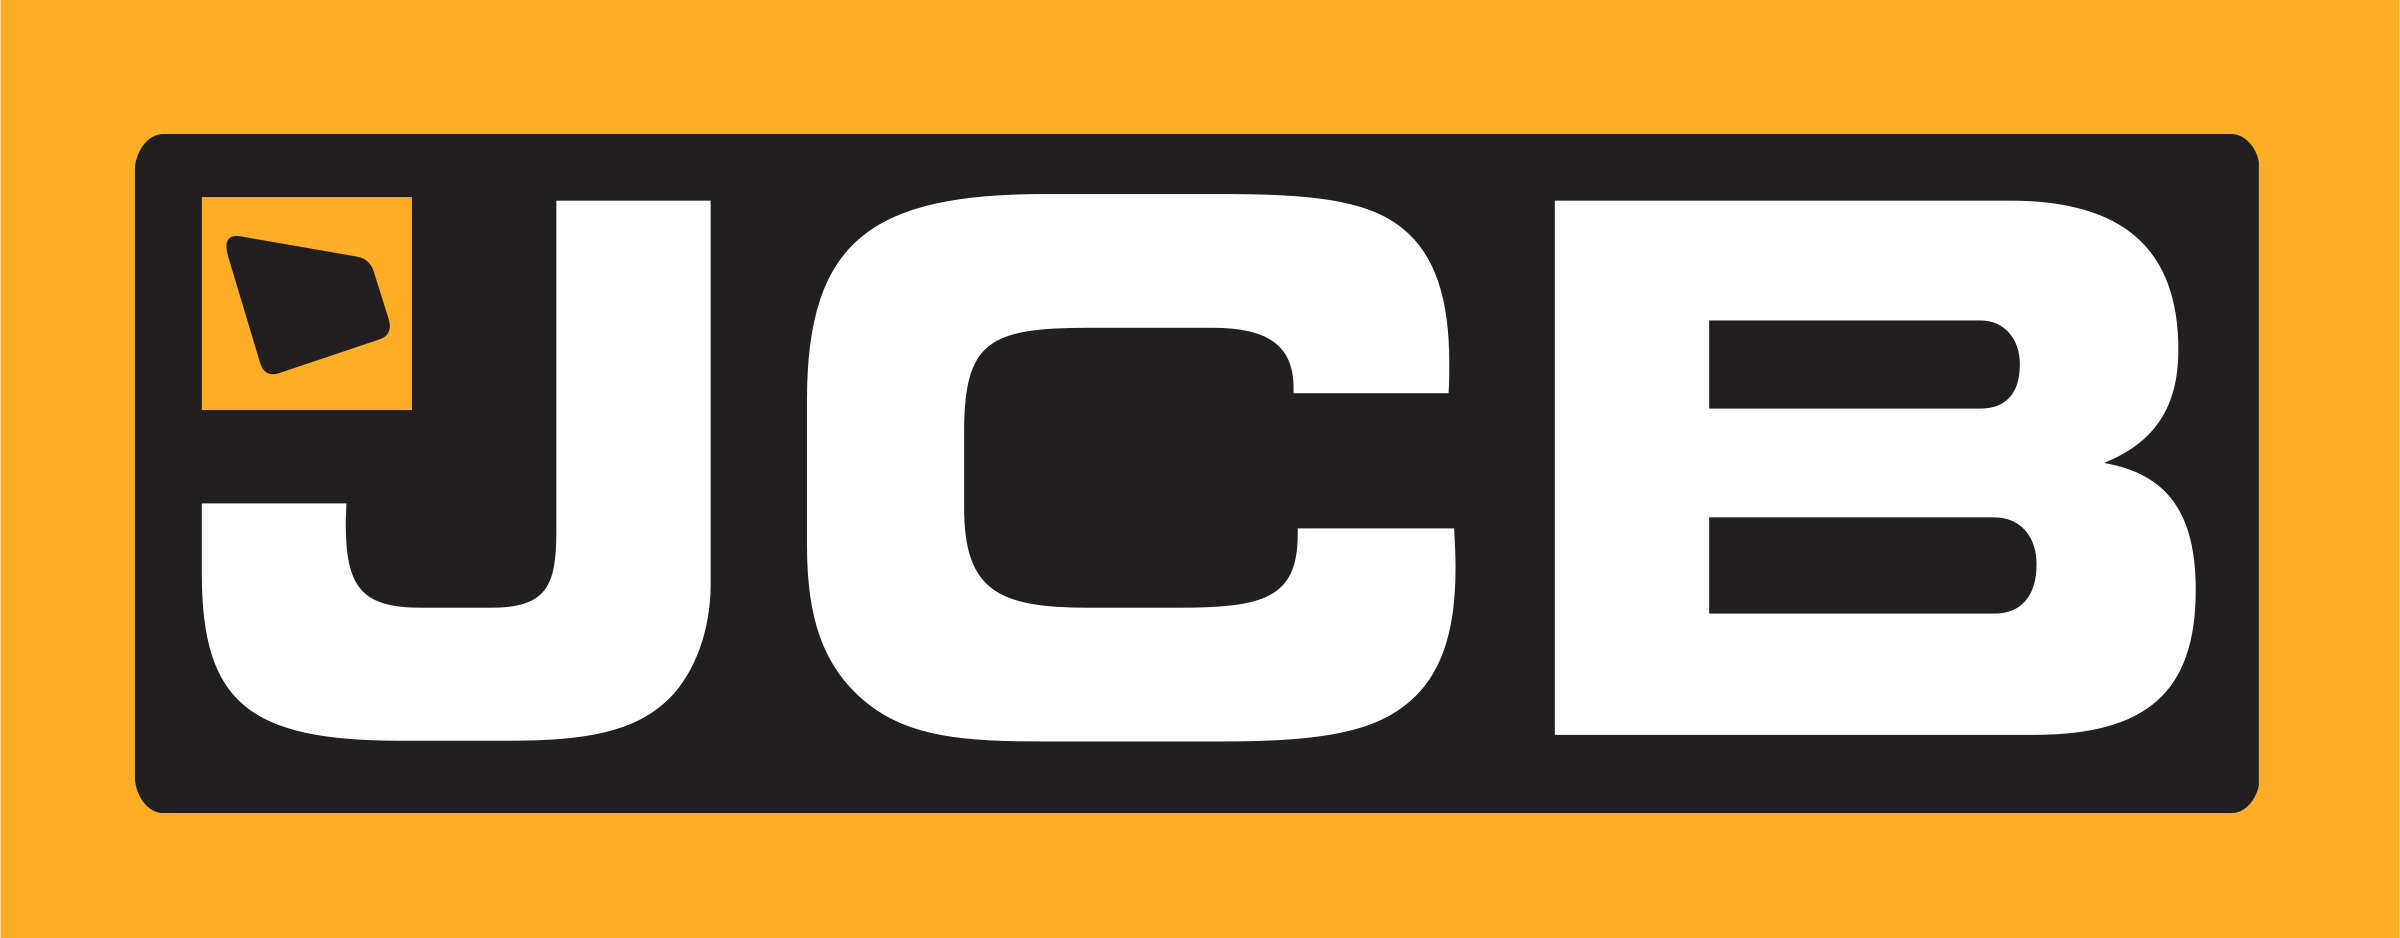 jcb-4-logo-png-transparent